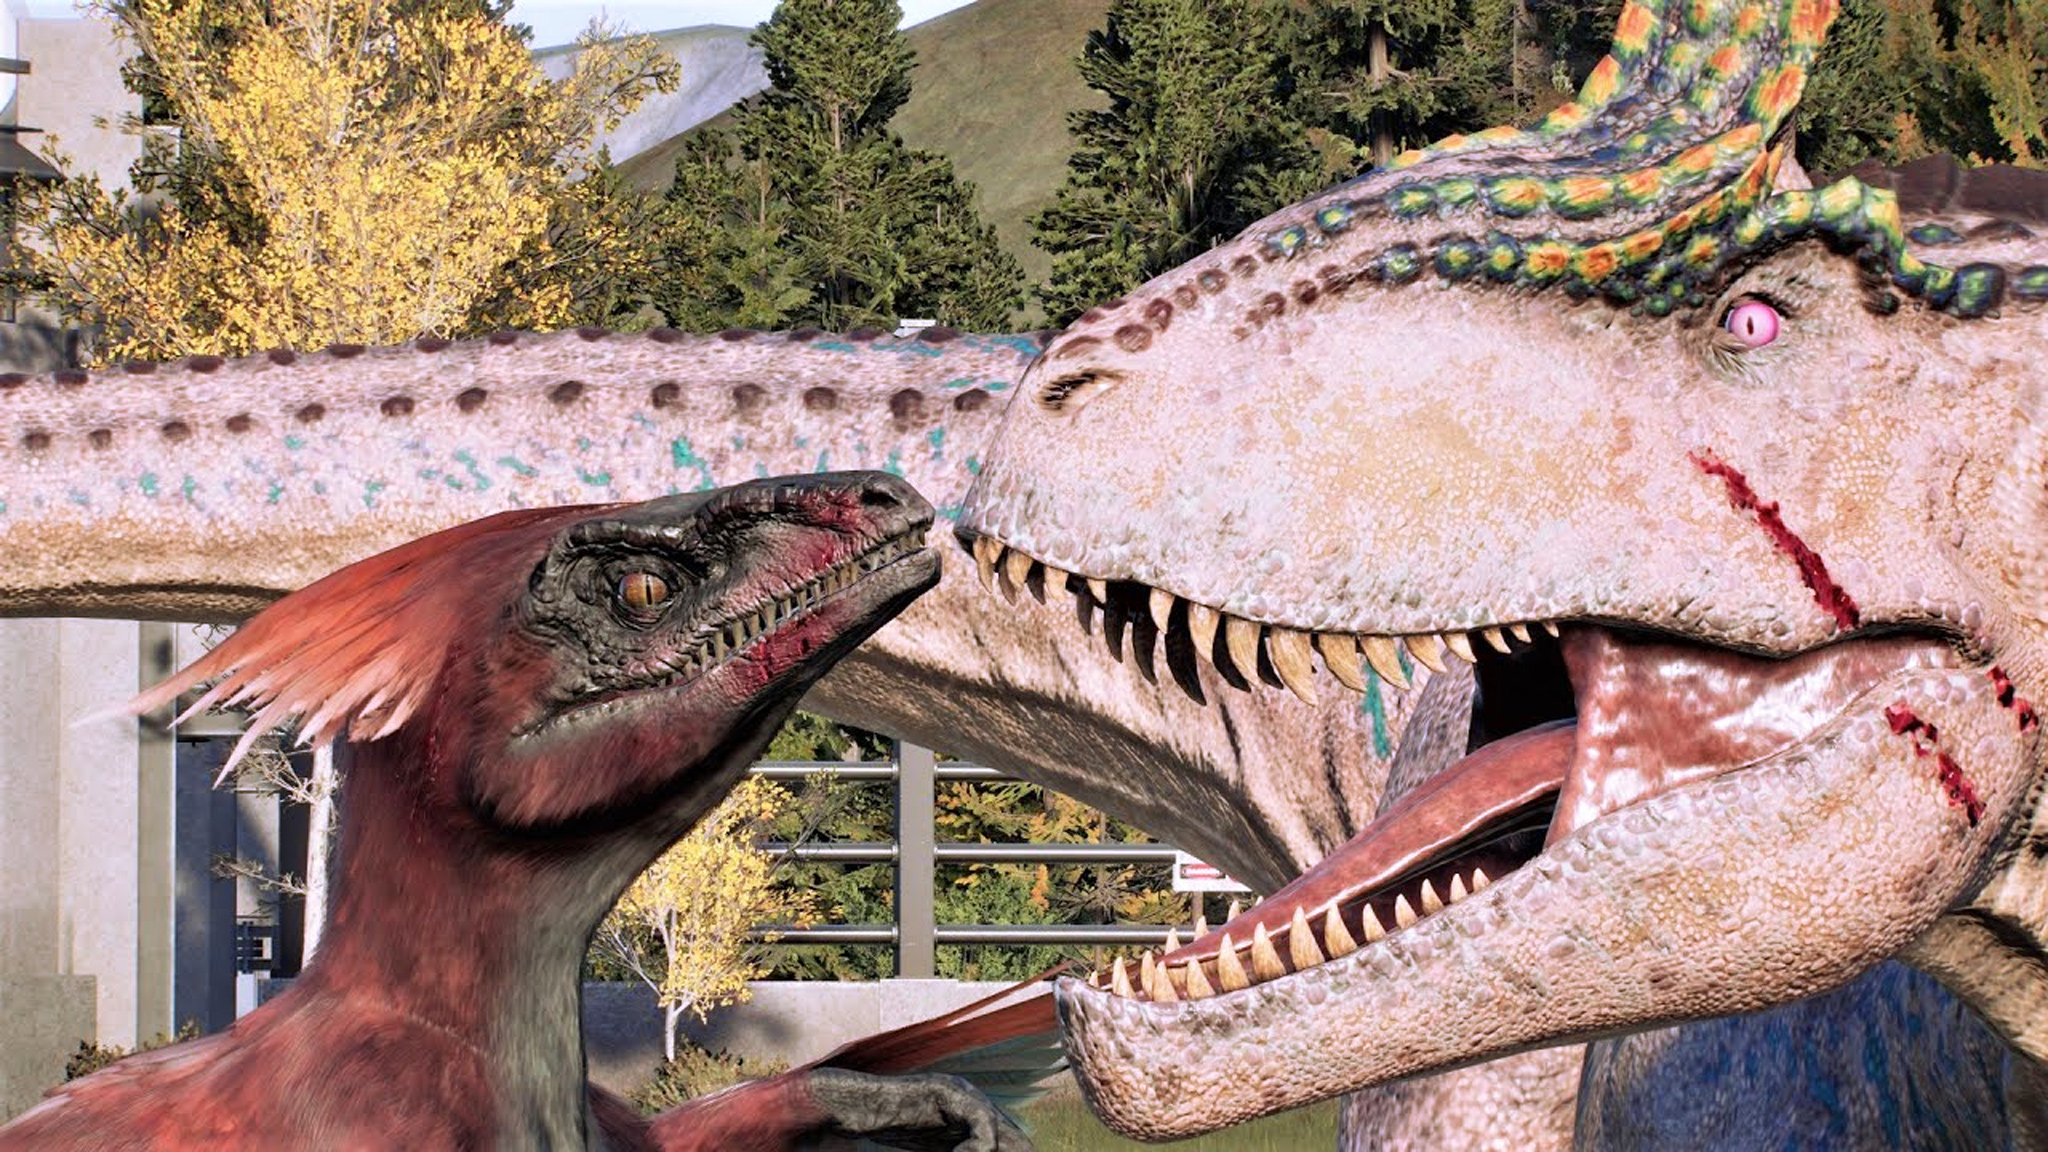 冰与火:火盗龙 vs 冰脊龙 ~ 侏罗纪世界进化 2 代